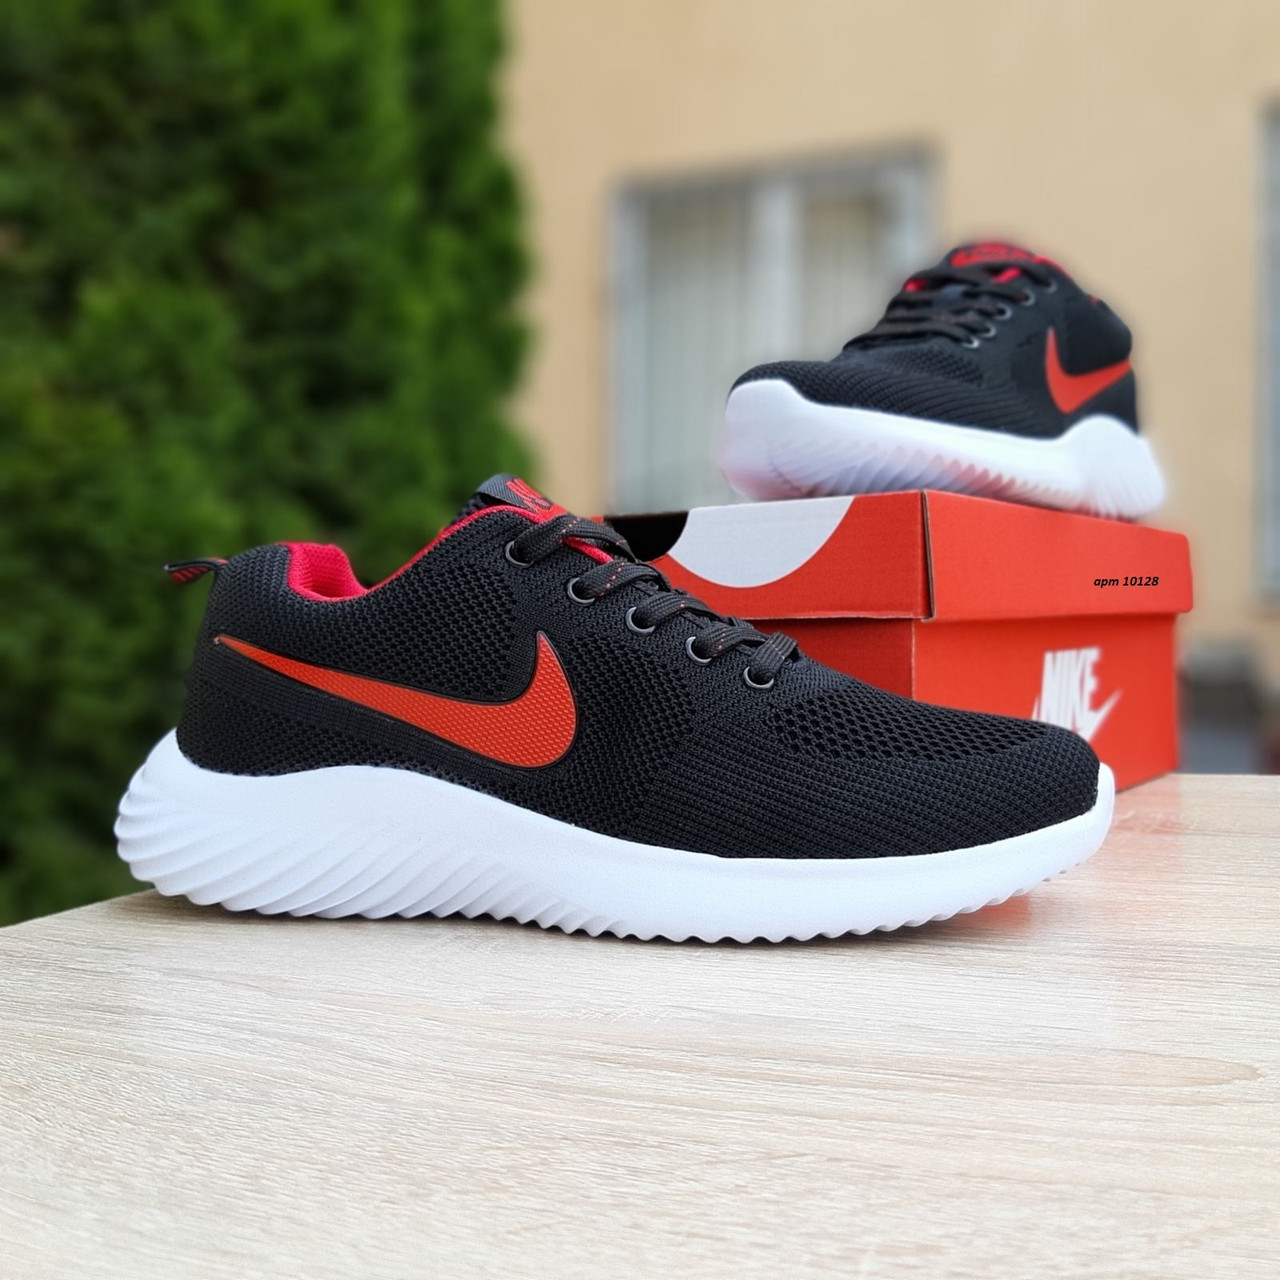 Мужские кроссовки в стиле Nike Air max, вязка, черные с красным, 40р(25 см), размеры:40,41,42,43,44